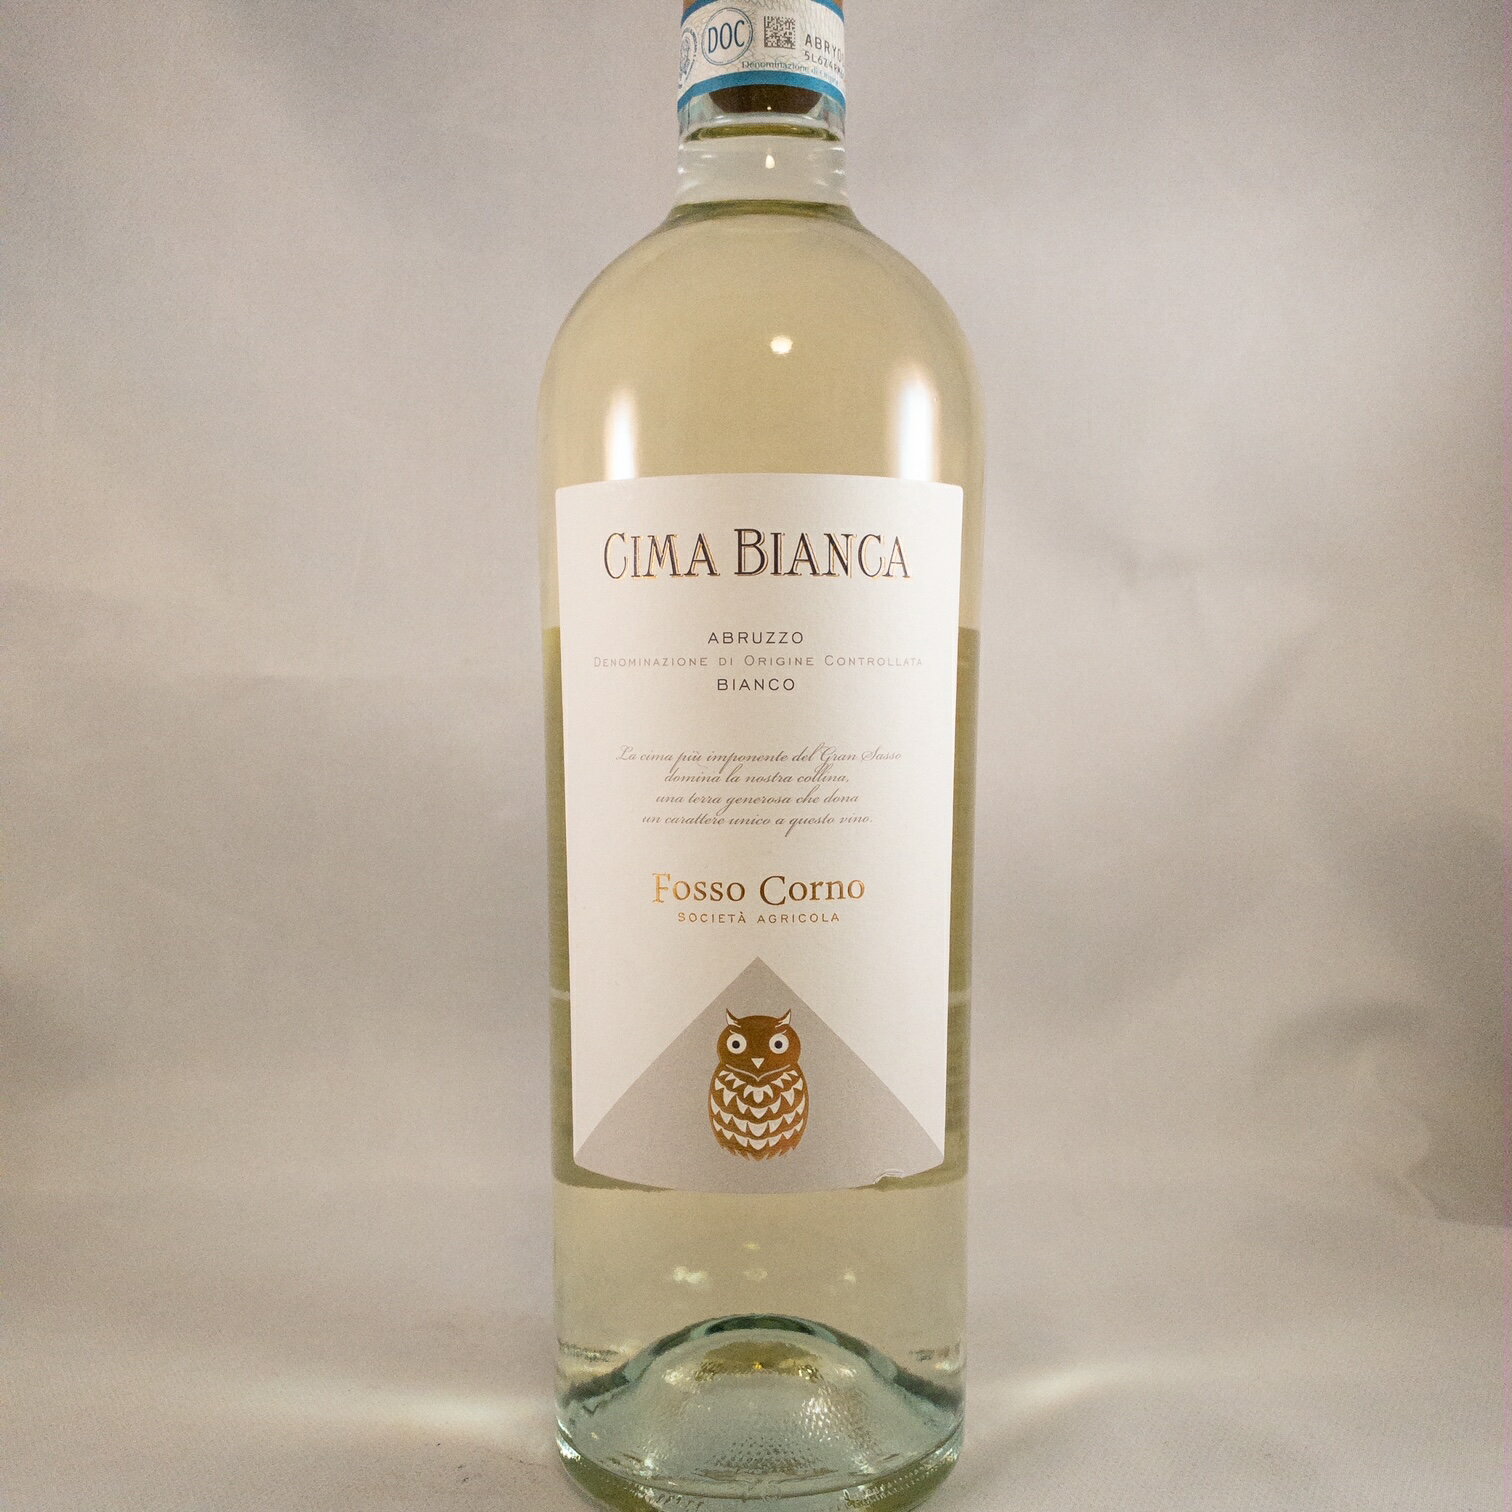 CIMA BIANCA生産地　アプルッツオ州生産者　フォッソ・コルノ品種　　シャルドネ50%　ソーヴィニヨン50%容量　　750ml&nbsp; &nbsp;アペニン山脈最高峰グランサッソの雪に覆われた頂上（CIMA　BIANCA）をイメージして造られた 清涼感のあるワイン。もちろん、ステンレスで造られたフレッシュな味わいです。白いラベルからフクロウをくり抜いたデザインが可愛らしいボトルです！　